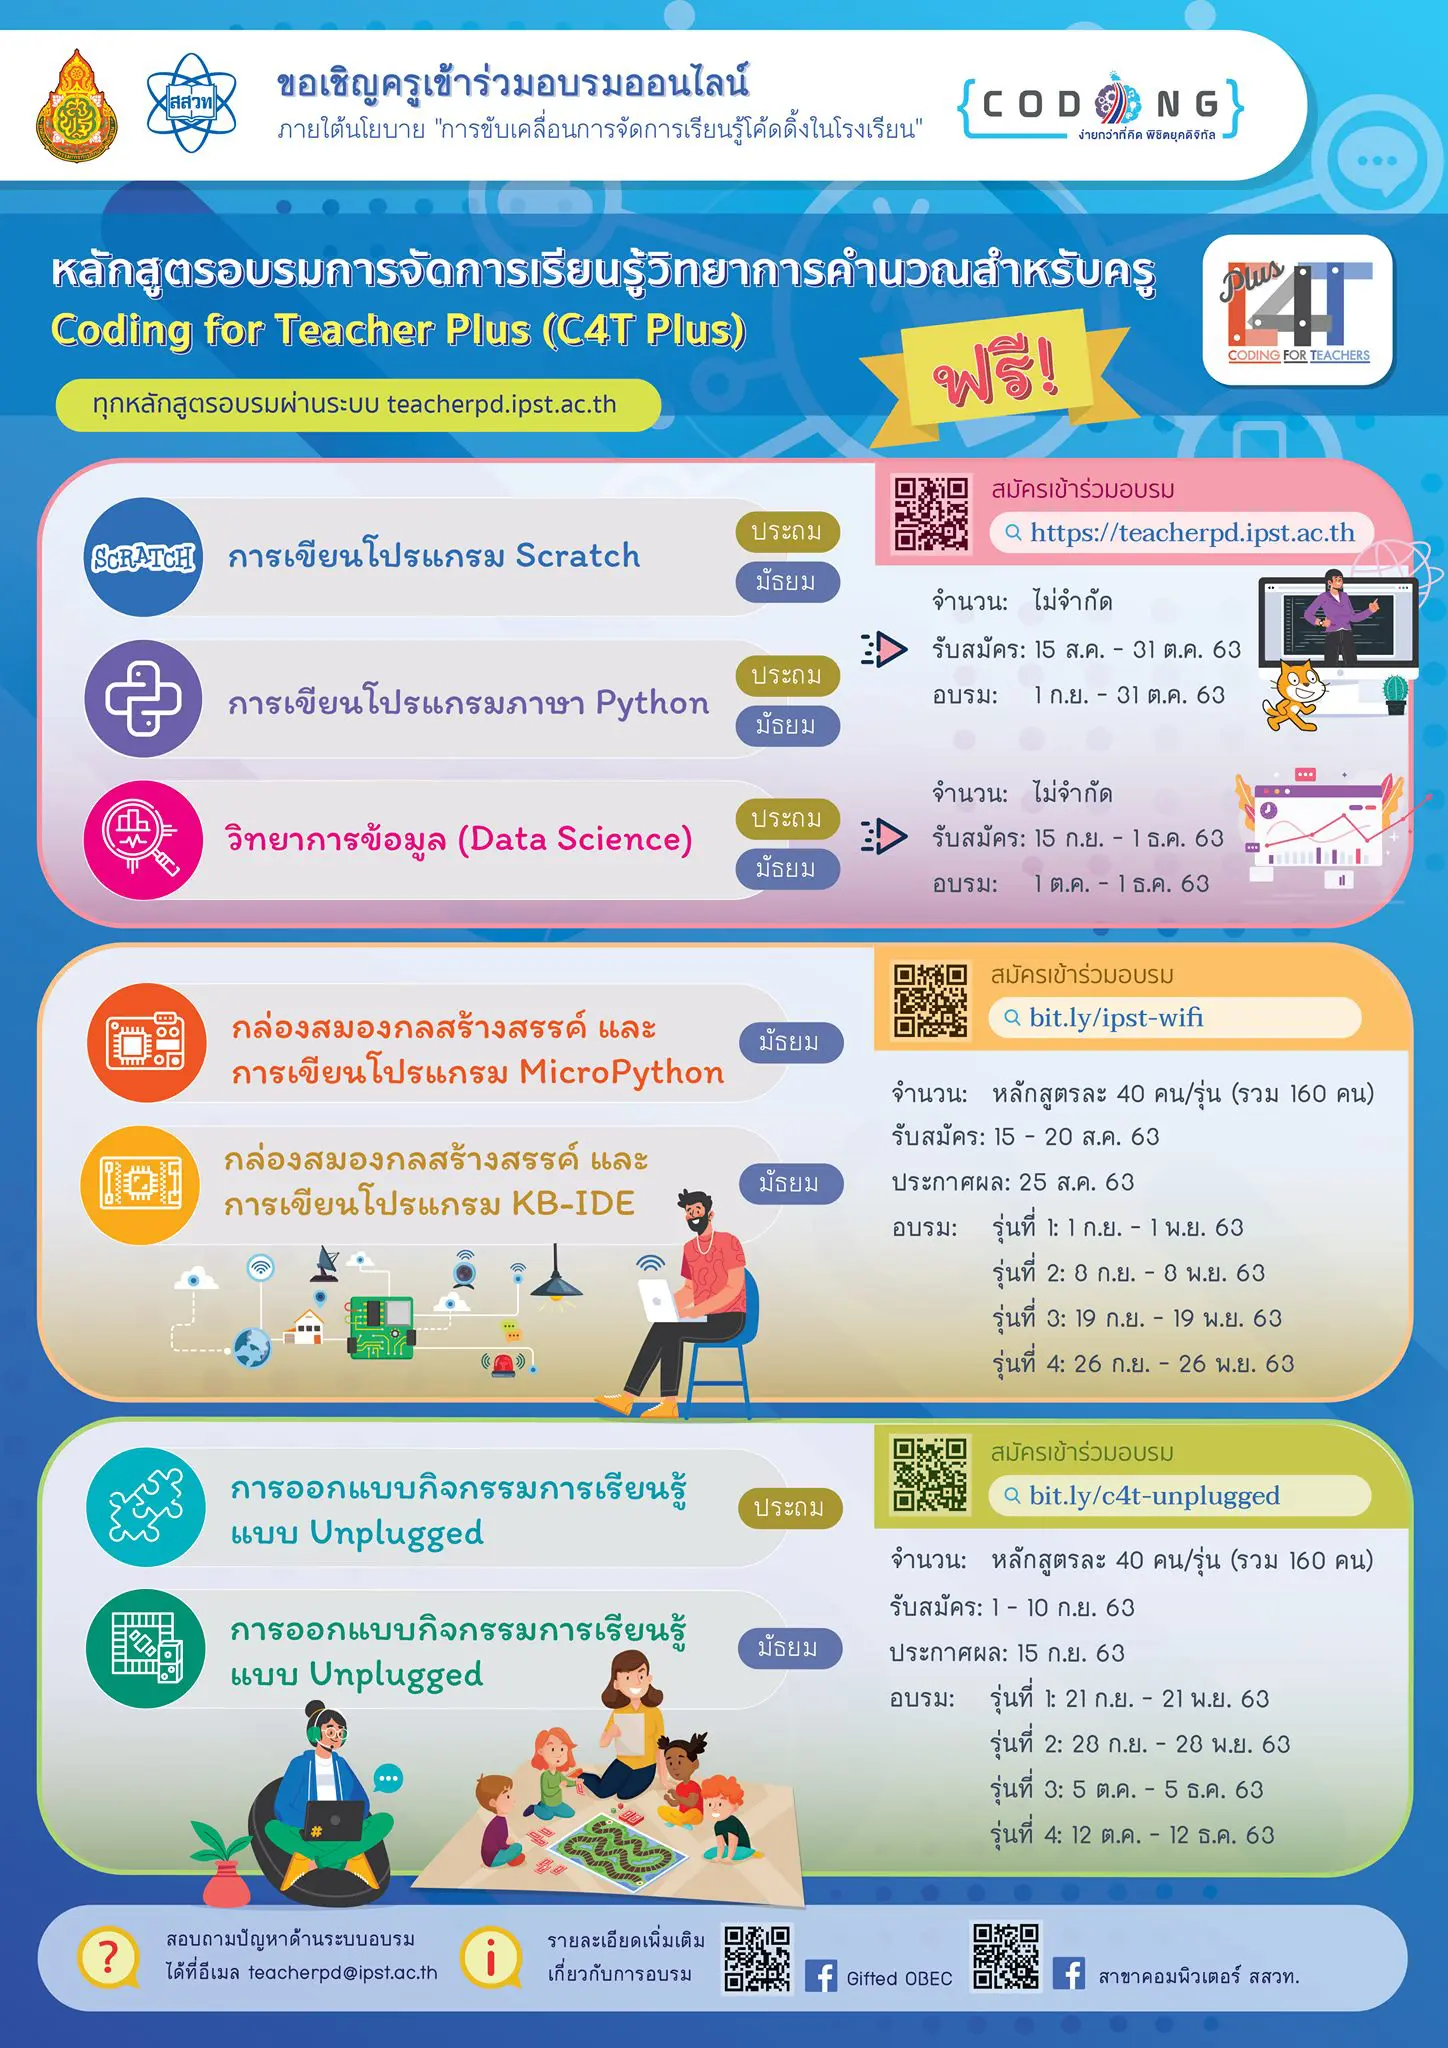 มาแล้ว!! สสวท.เปิดอบรมออนไลน์ การจัดการเรียนรู้วิทยาการคำนวณ สำหรับครู Coding for Teacher Plus (C4T Plus) 7 หลักสูตร